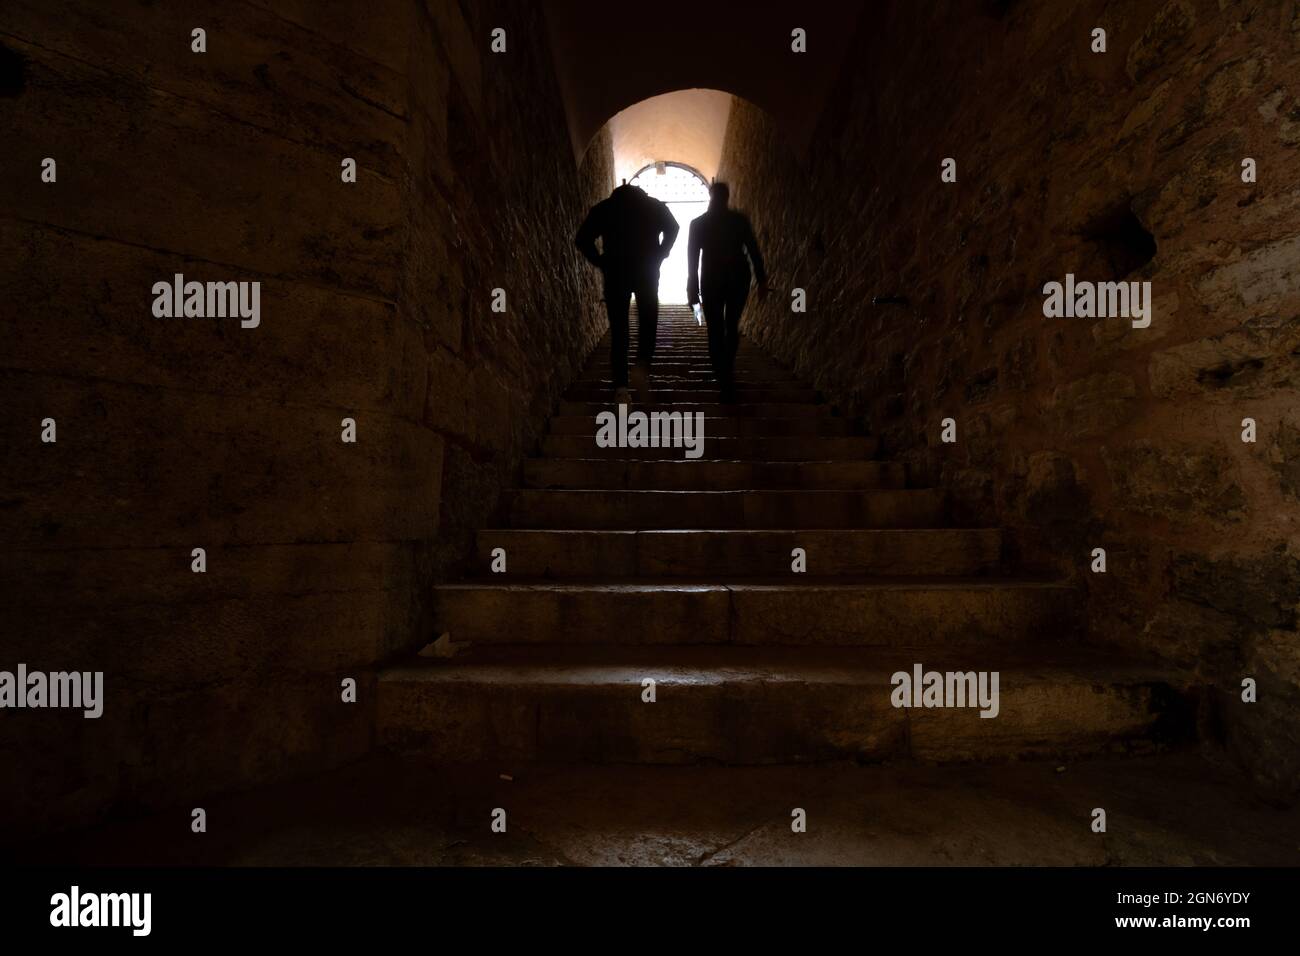 Zwei Personen, die in der dunklen Treppe zum Licht gehen. Jenseits, Hoffnung, Himmel Konzept. Stockfoto